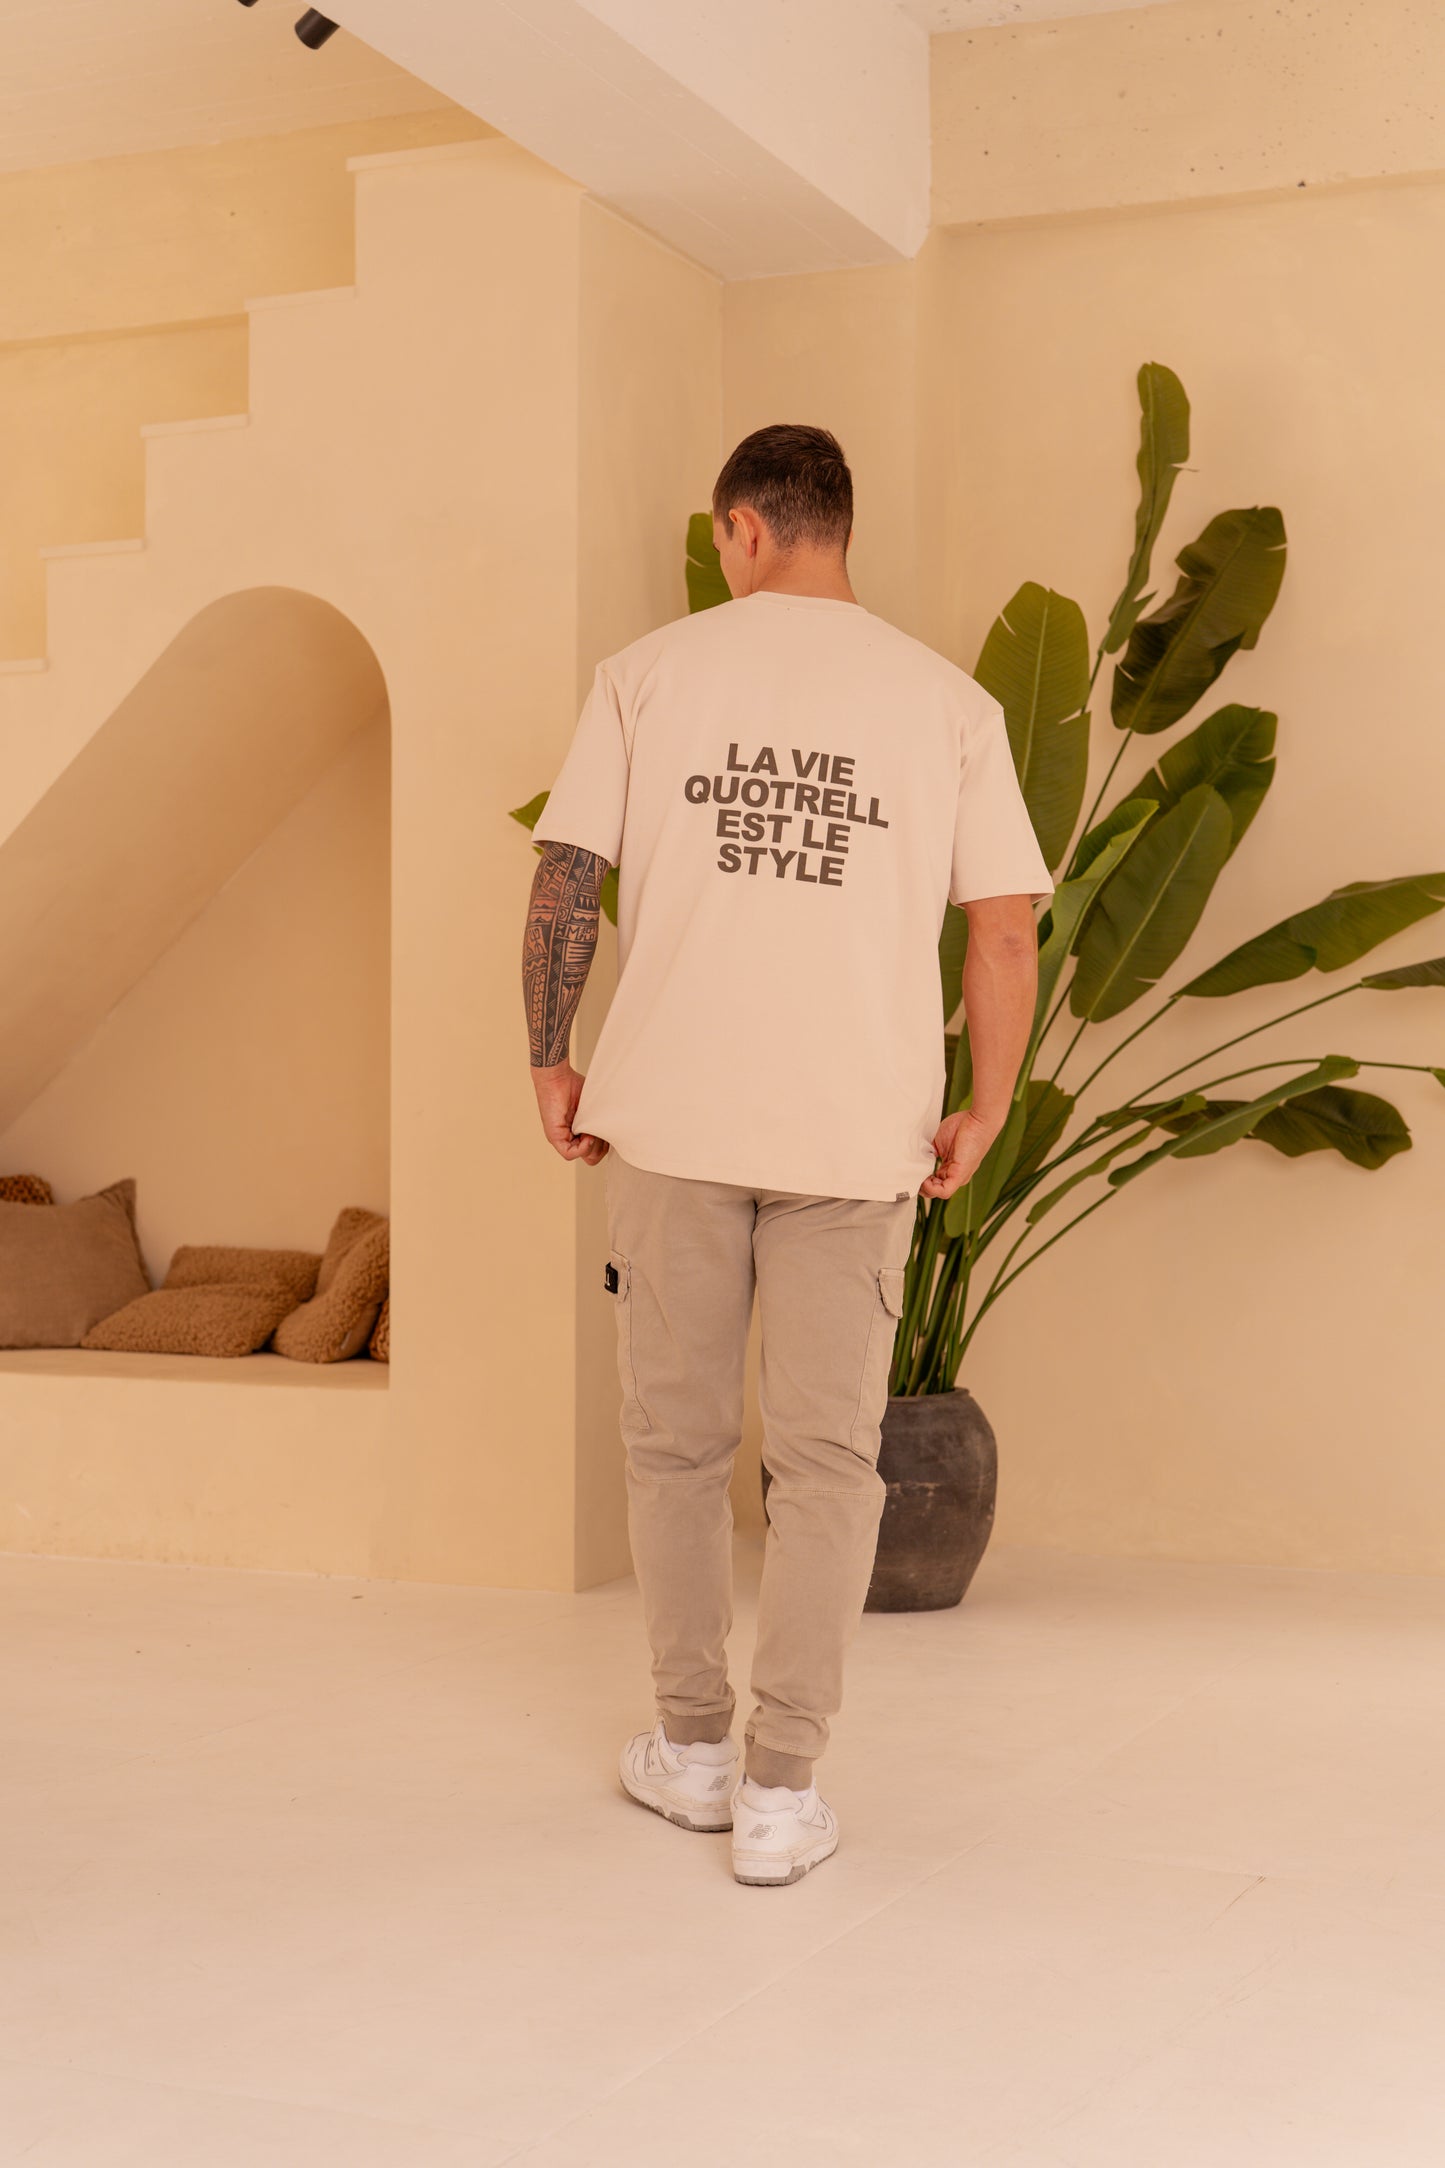 Quotrell La Vie t-shirt - cement/concrete